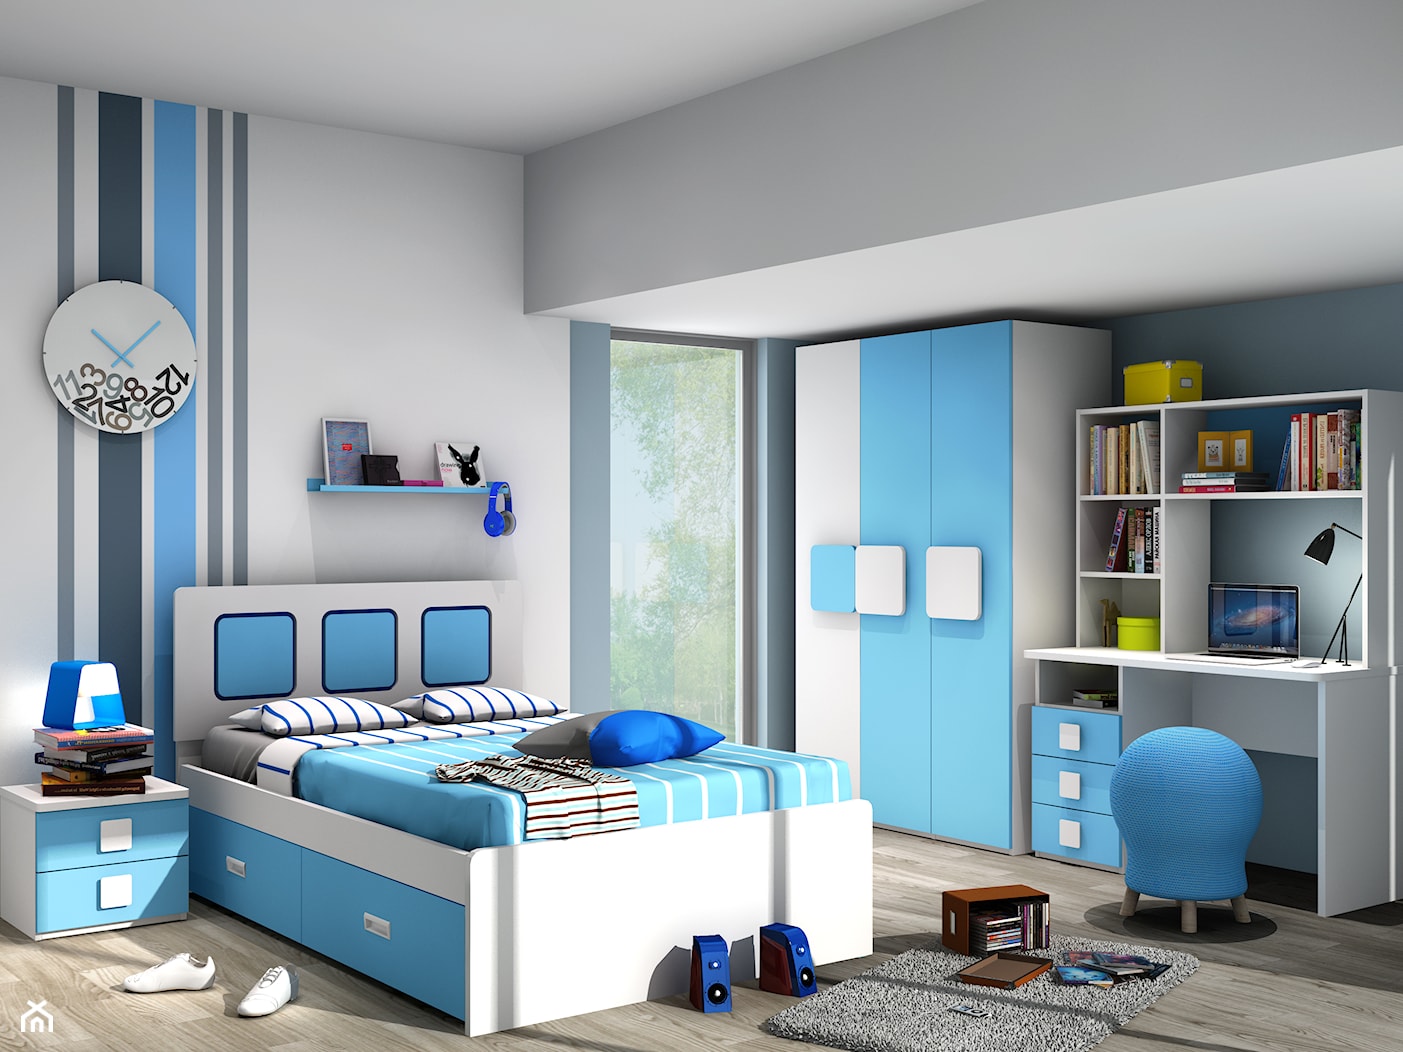 Pokój dla chłopca - kolor niebieski i biały - zdjęcie od Elies.pl - Homebook